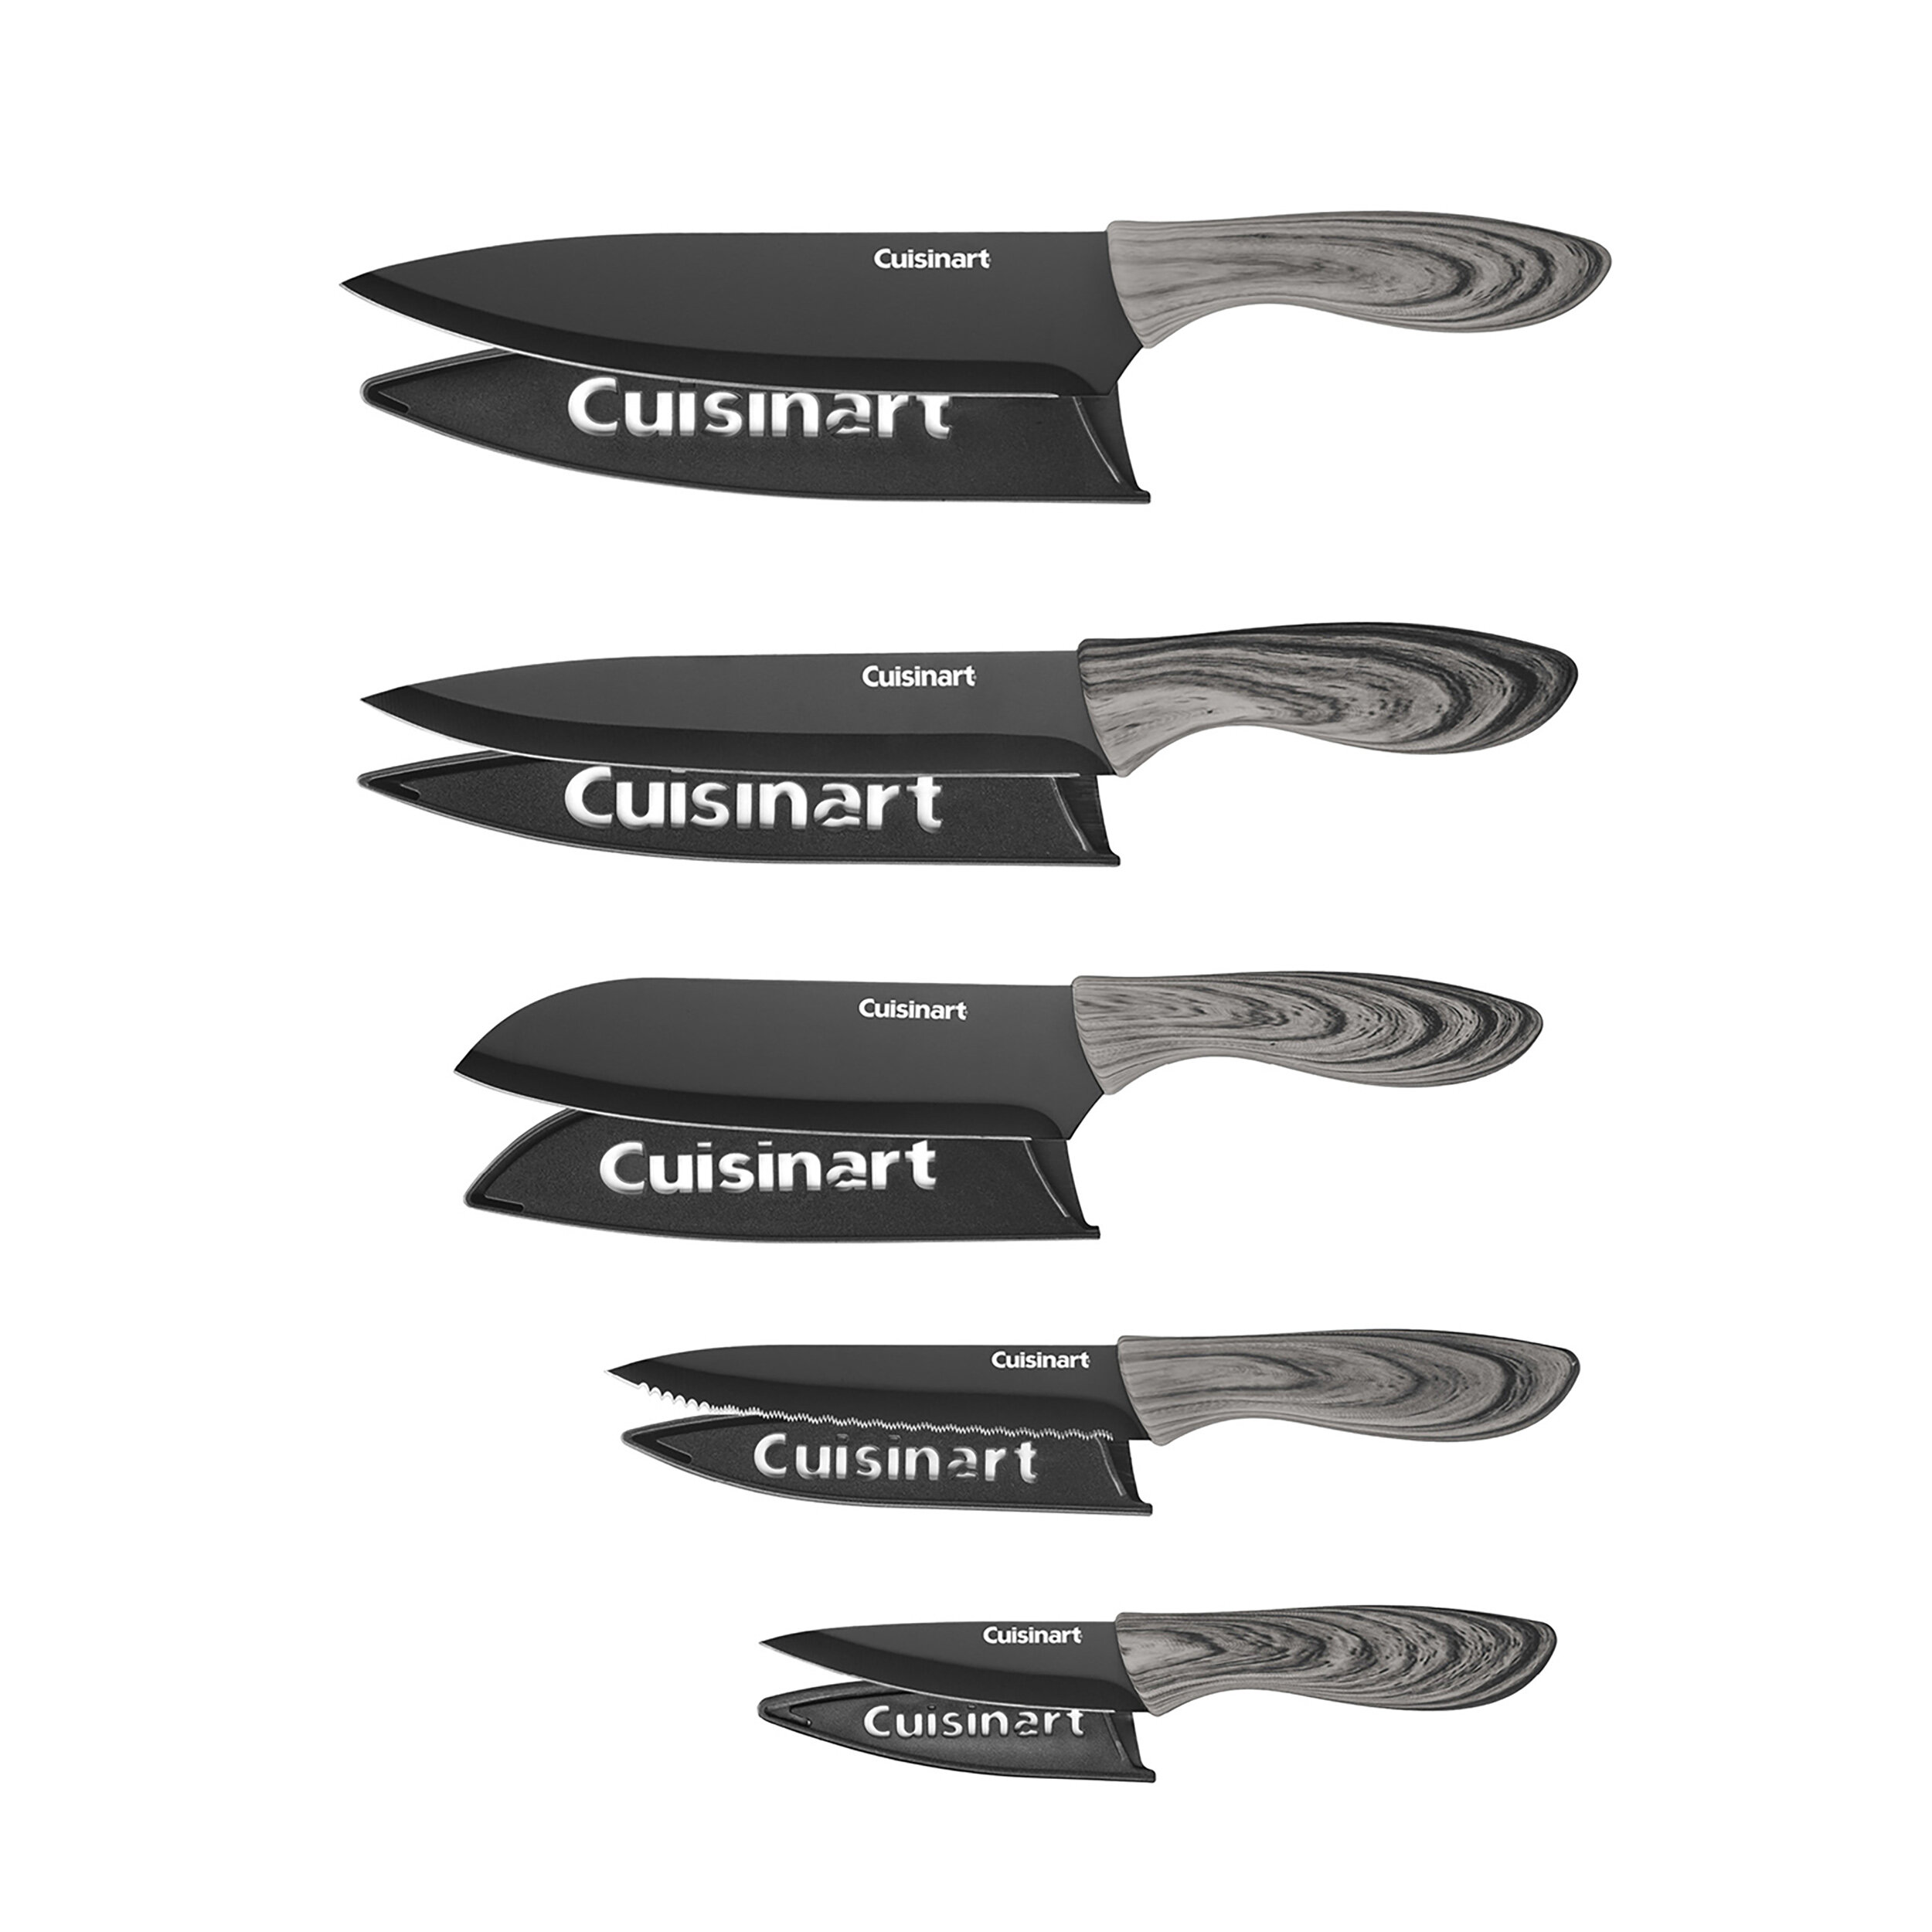 https://assets.wfcdn.com/im/10281196/compr-r85/1241/124129276/cuisinart-10-piece-assorted-knife-set.jpg